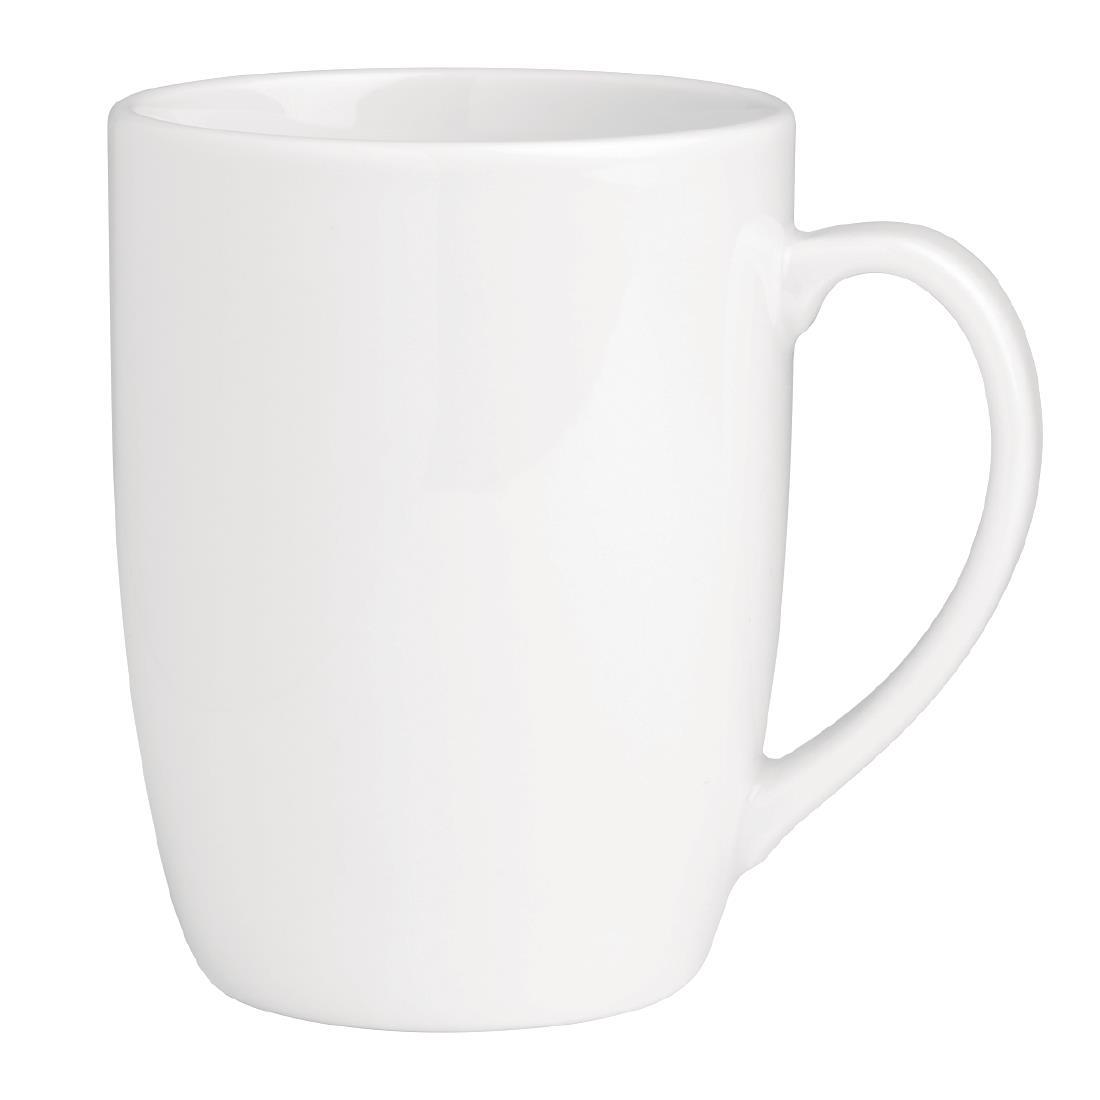 Royal Porcelain Classic White Mug 350ml (Pack of 12) - GT945  - 2